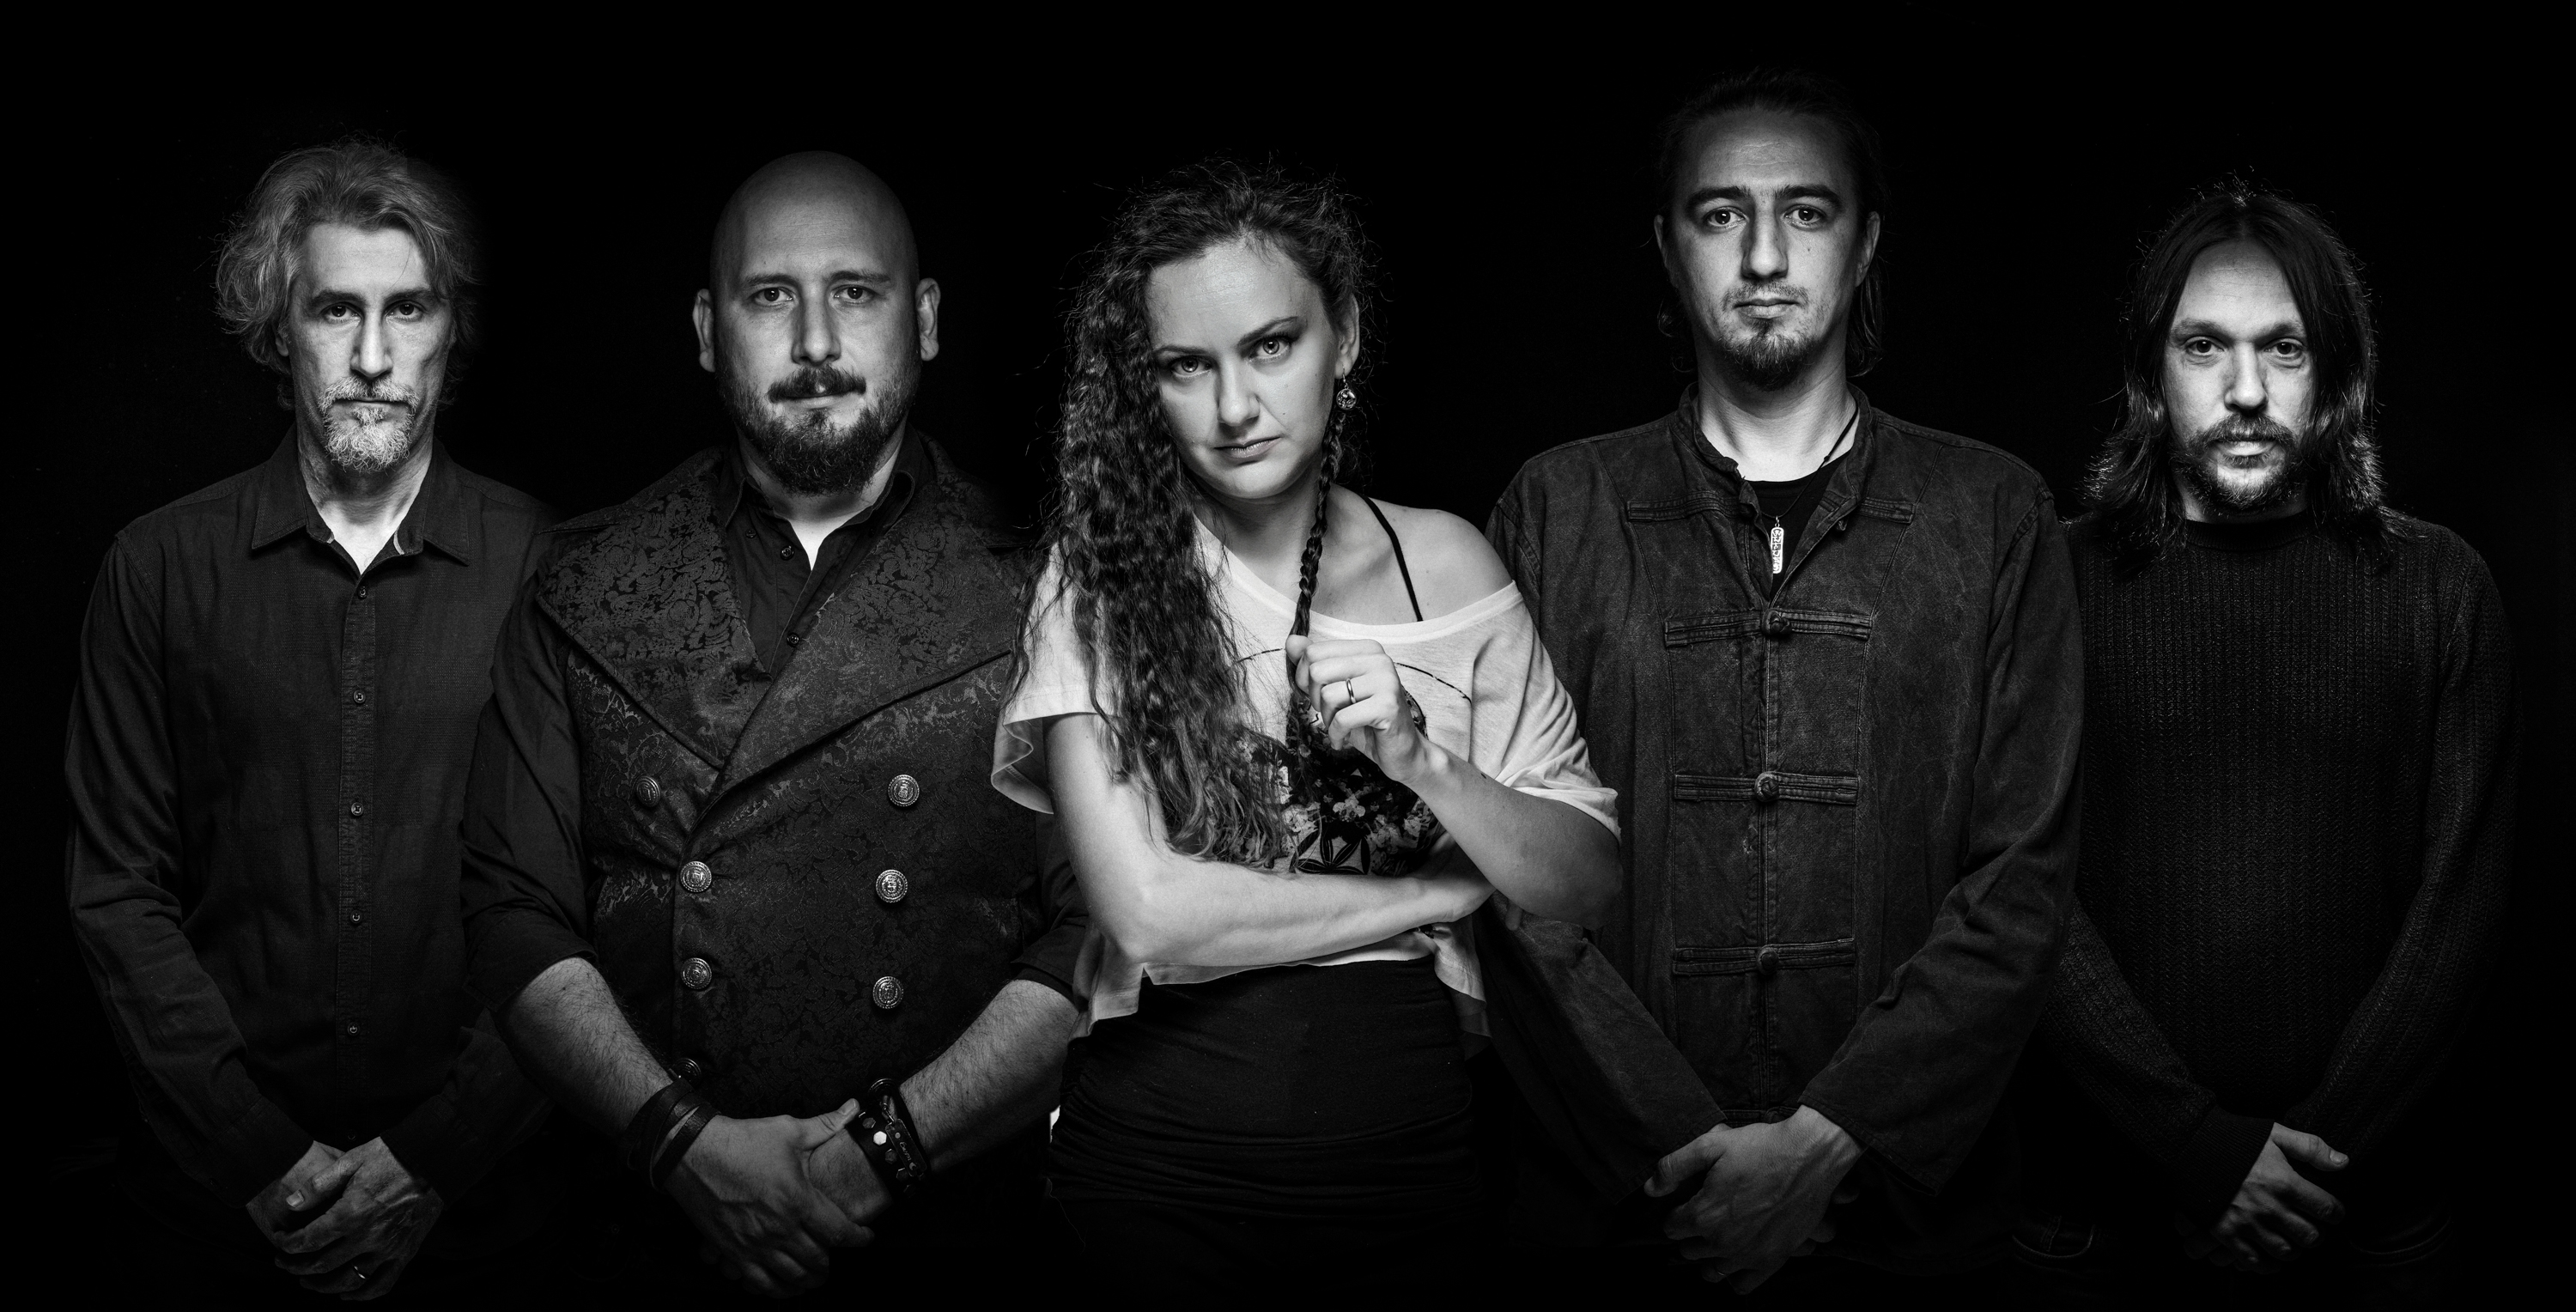 Trupa Bucium a lansat videoclipul piesei ”Vânător”, un nou single de pe albumul ”Zimbrul Alb” - Imaginea 2